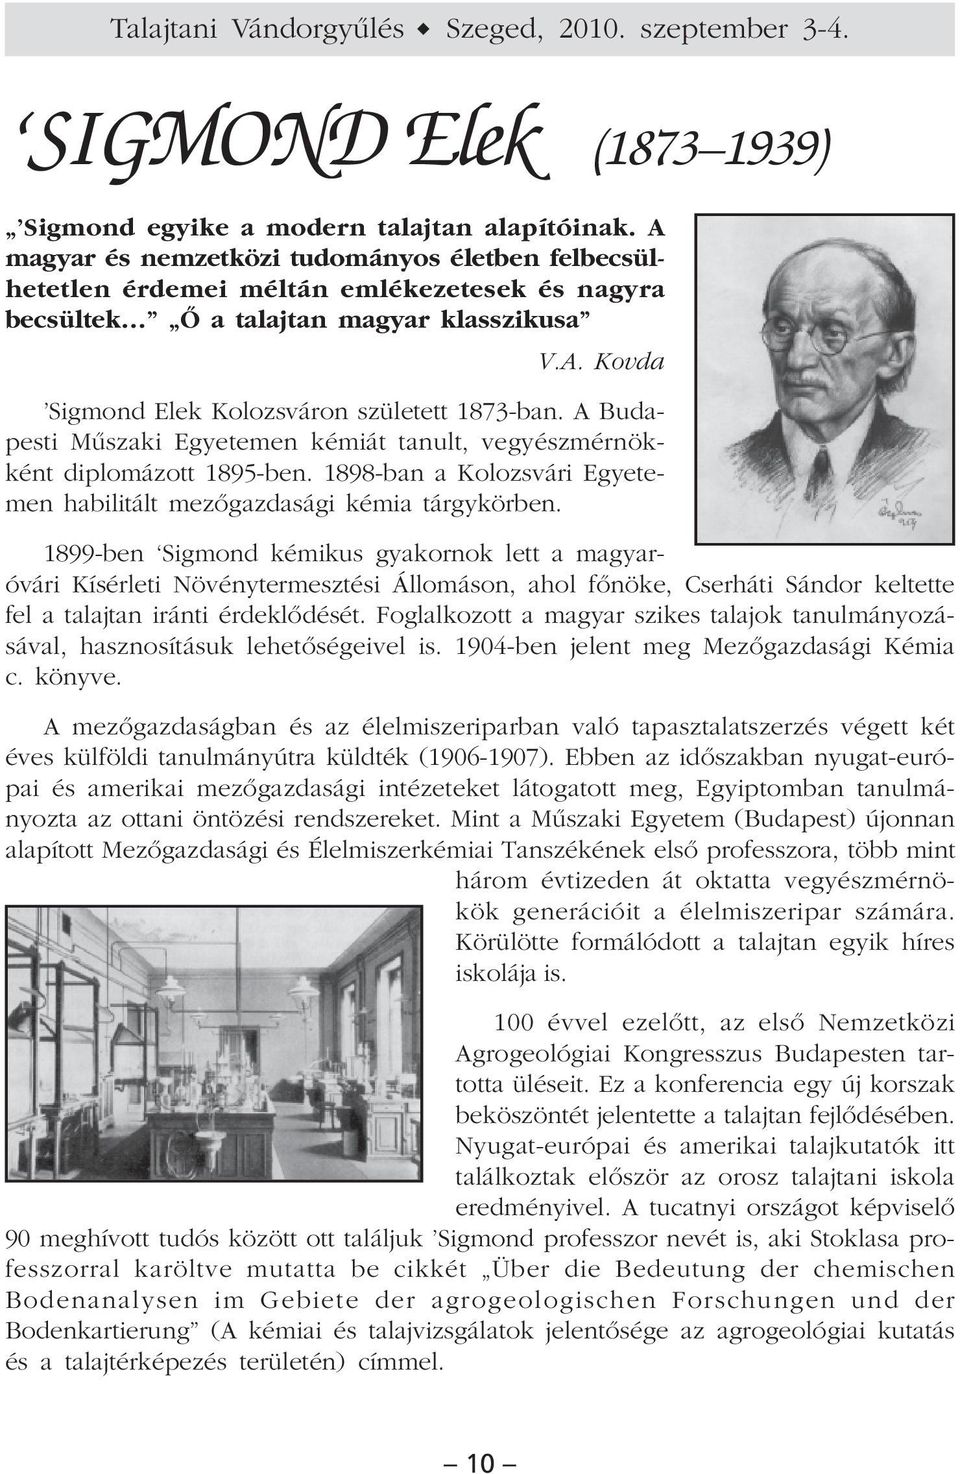 A Budapesti Mûszaki Egyetemen kémiát tanult, vegyészmérnökként diplomázott 1895-ben. 1898-ban a Kolozsvári Egyetemen habilitált mezõgazdasági kémia tárgykörben.